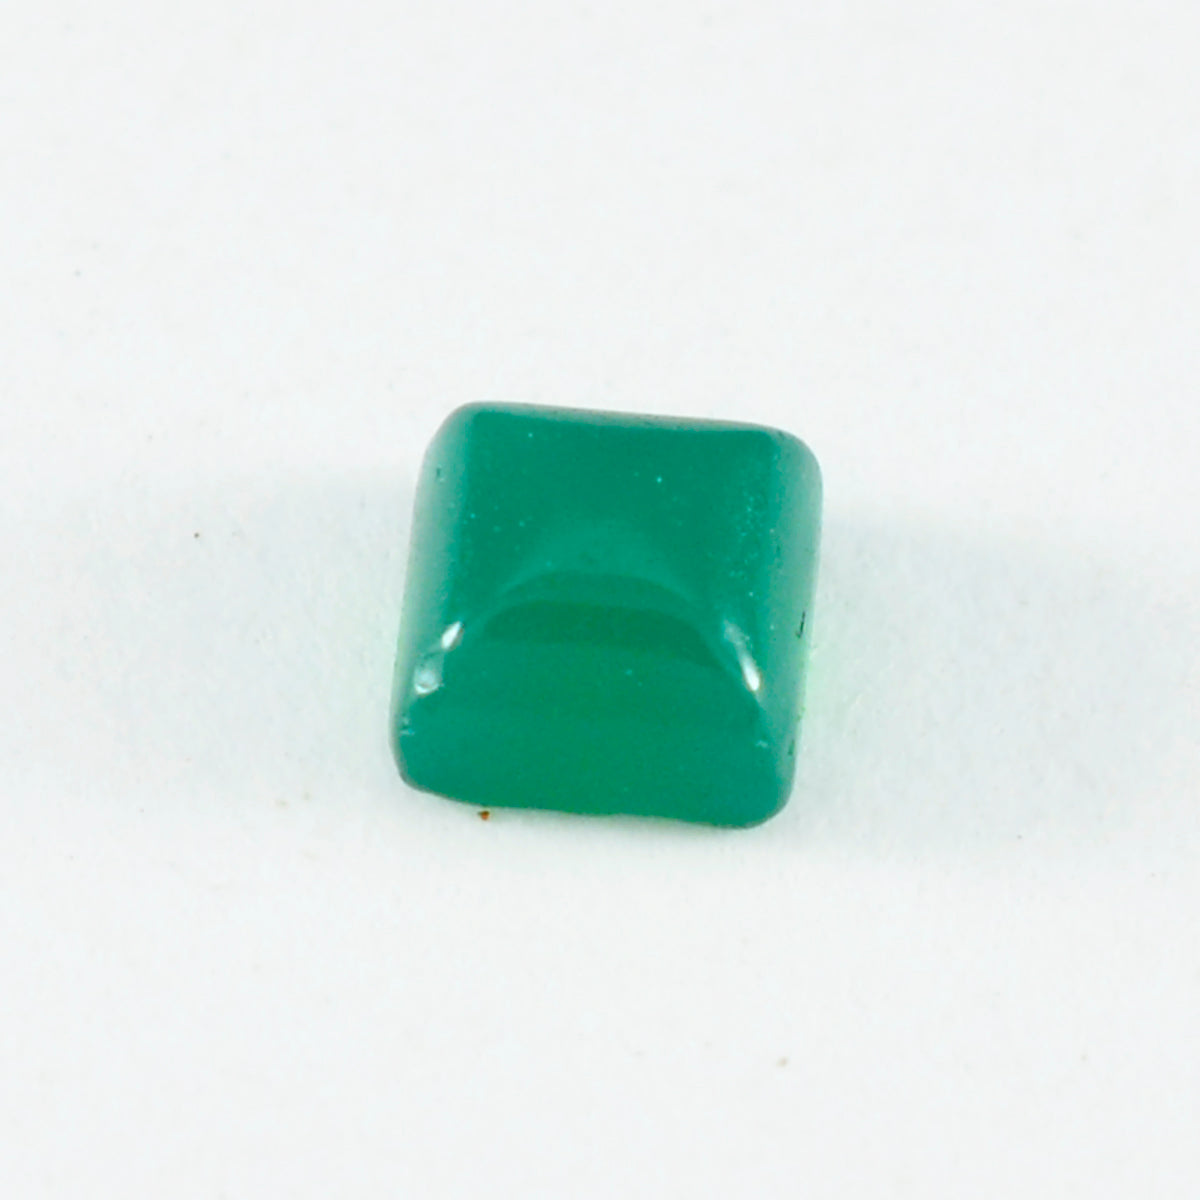 riyogems 1 шт. зеленый оникс кабошон 11x11 мм квадратной формы красивый качественный камень